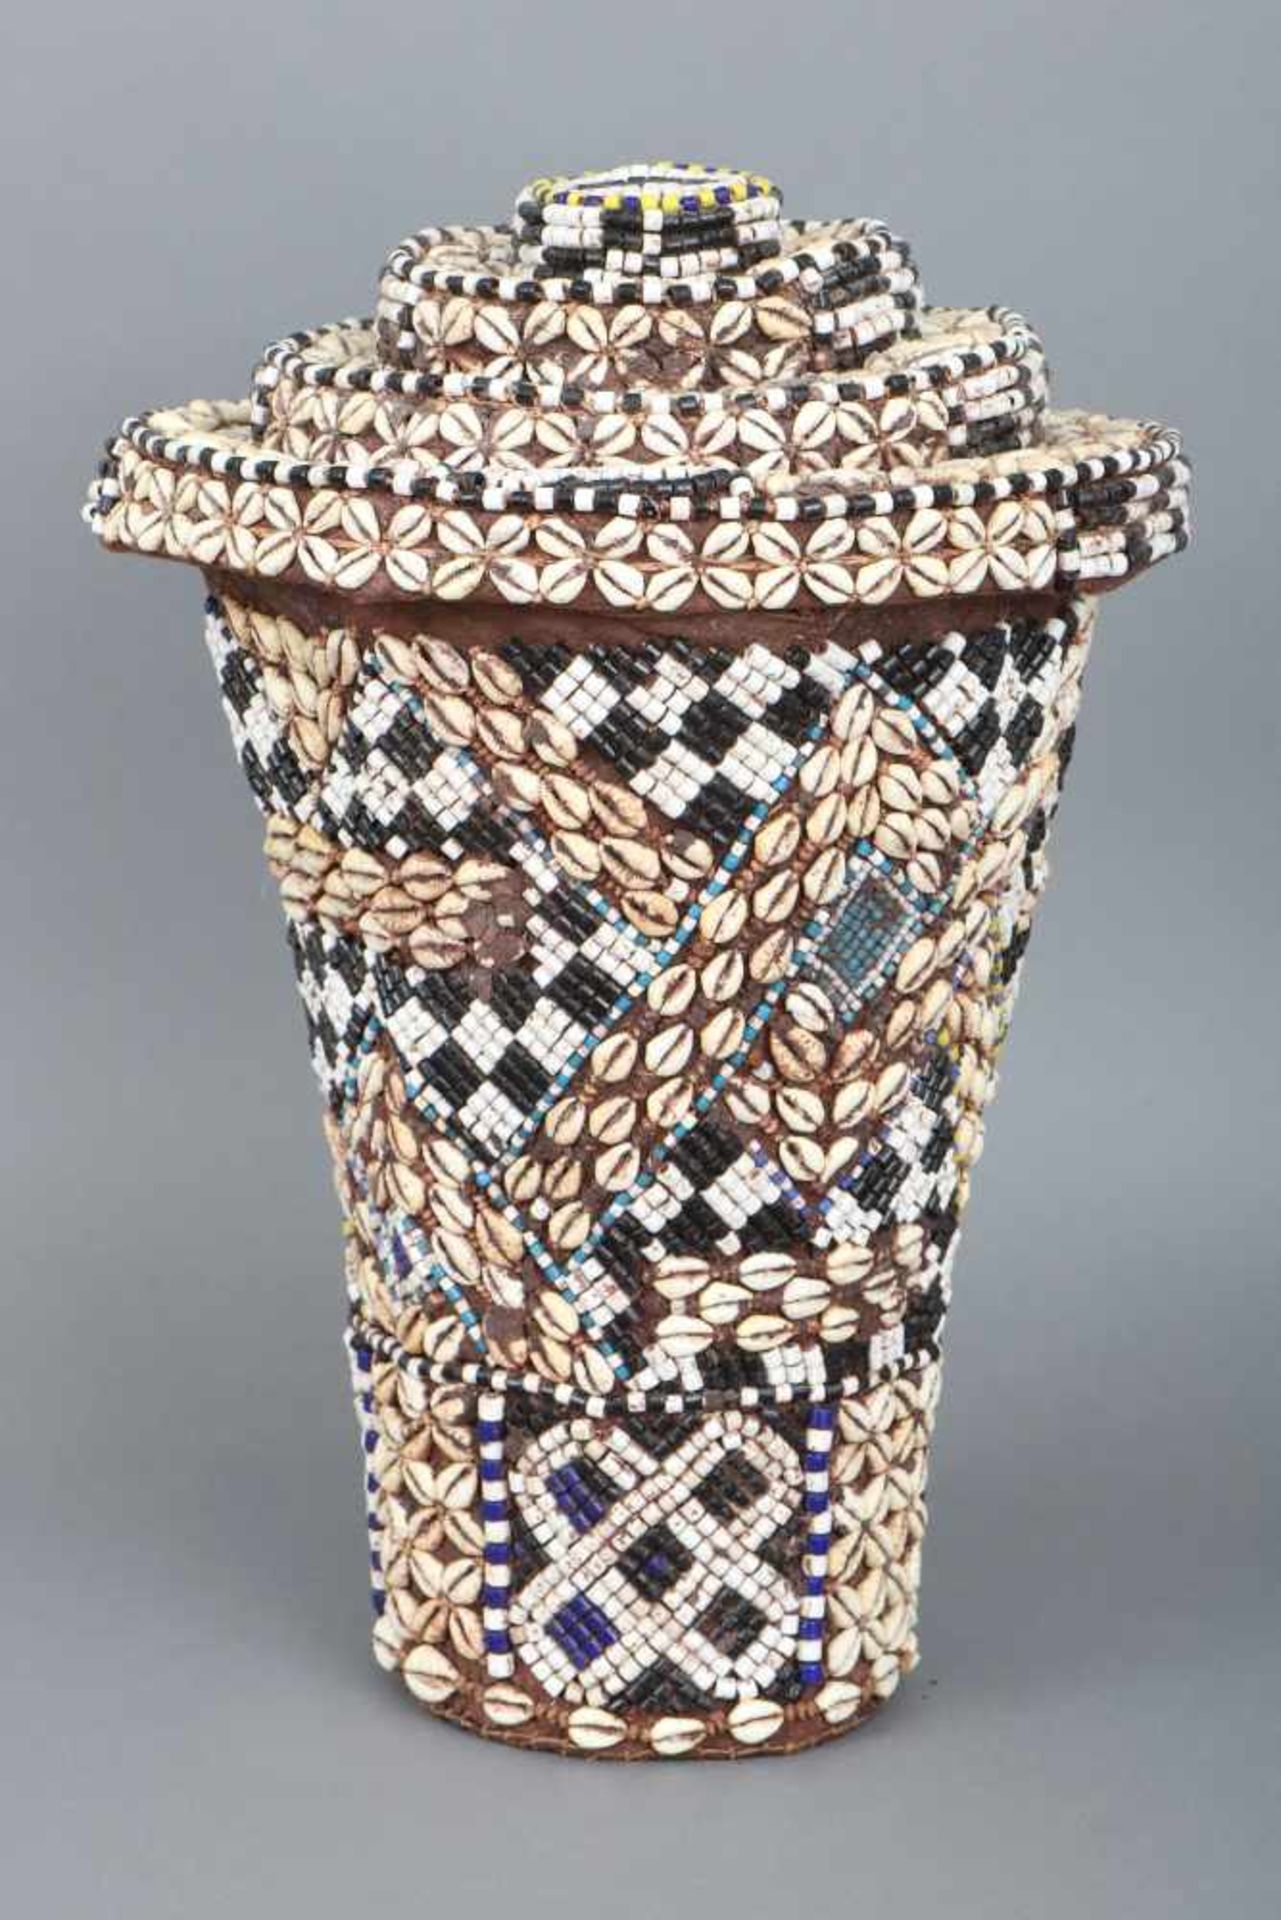 Afrikanischer Deckelkorbwohl Kongo, 2. Hälfte 20. Jahrhundert, zylindrischer Korb mit farbigen